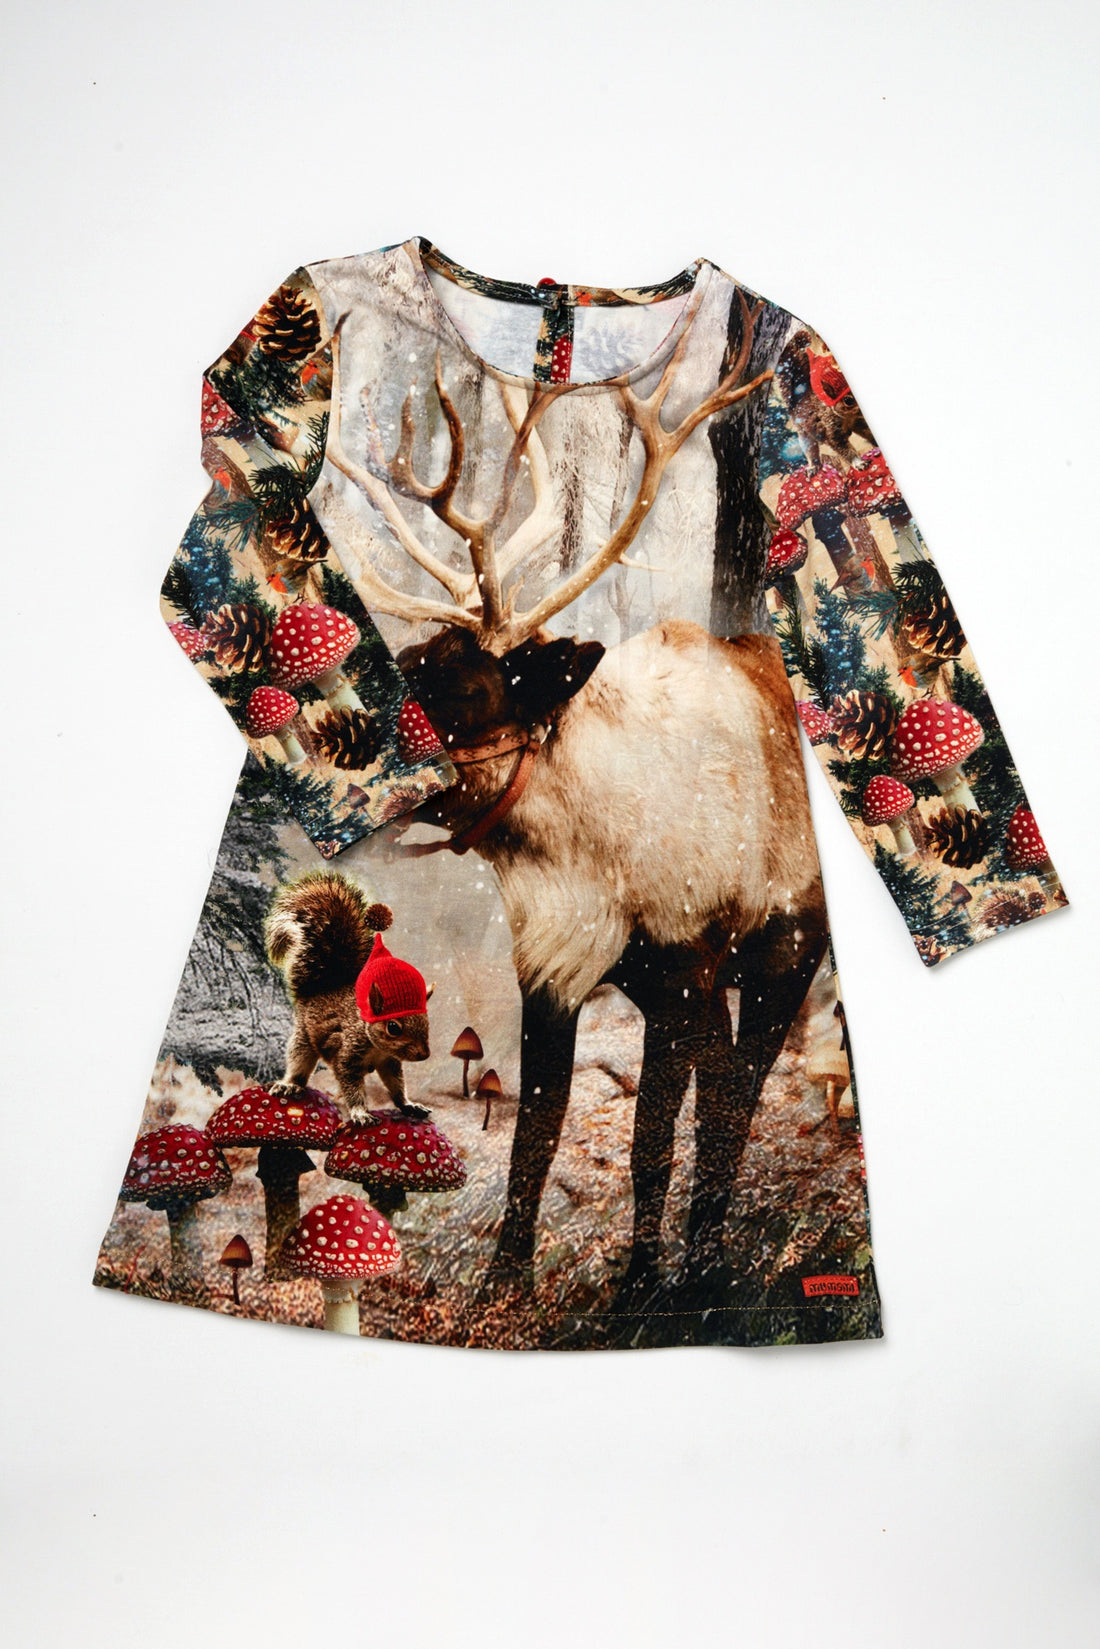 Snowy Reindeer Dress